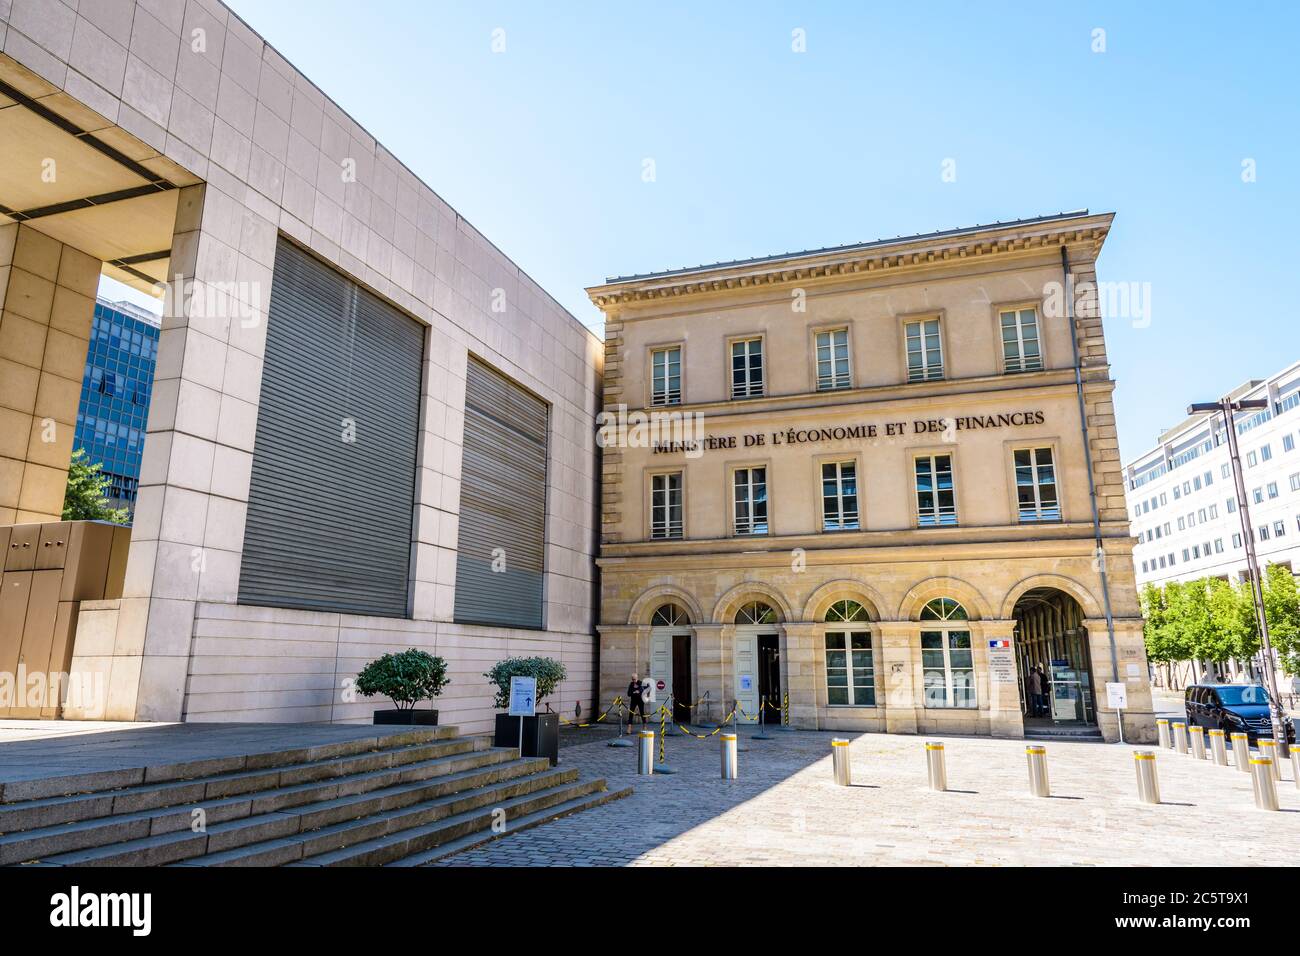 Vue générale du bâtiment de réception du Ministère de l'économie et des finances dans le quartier Bercy à Paris, France. Banque D'Images